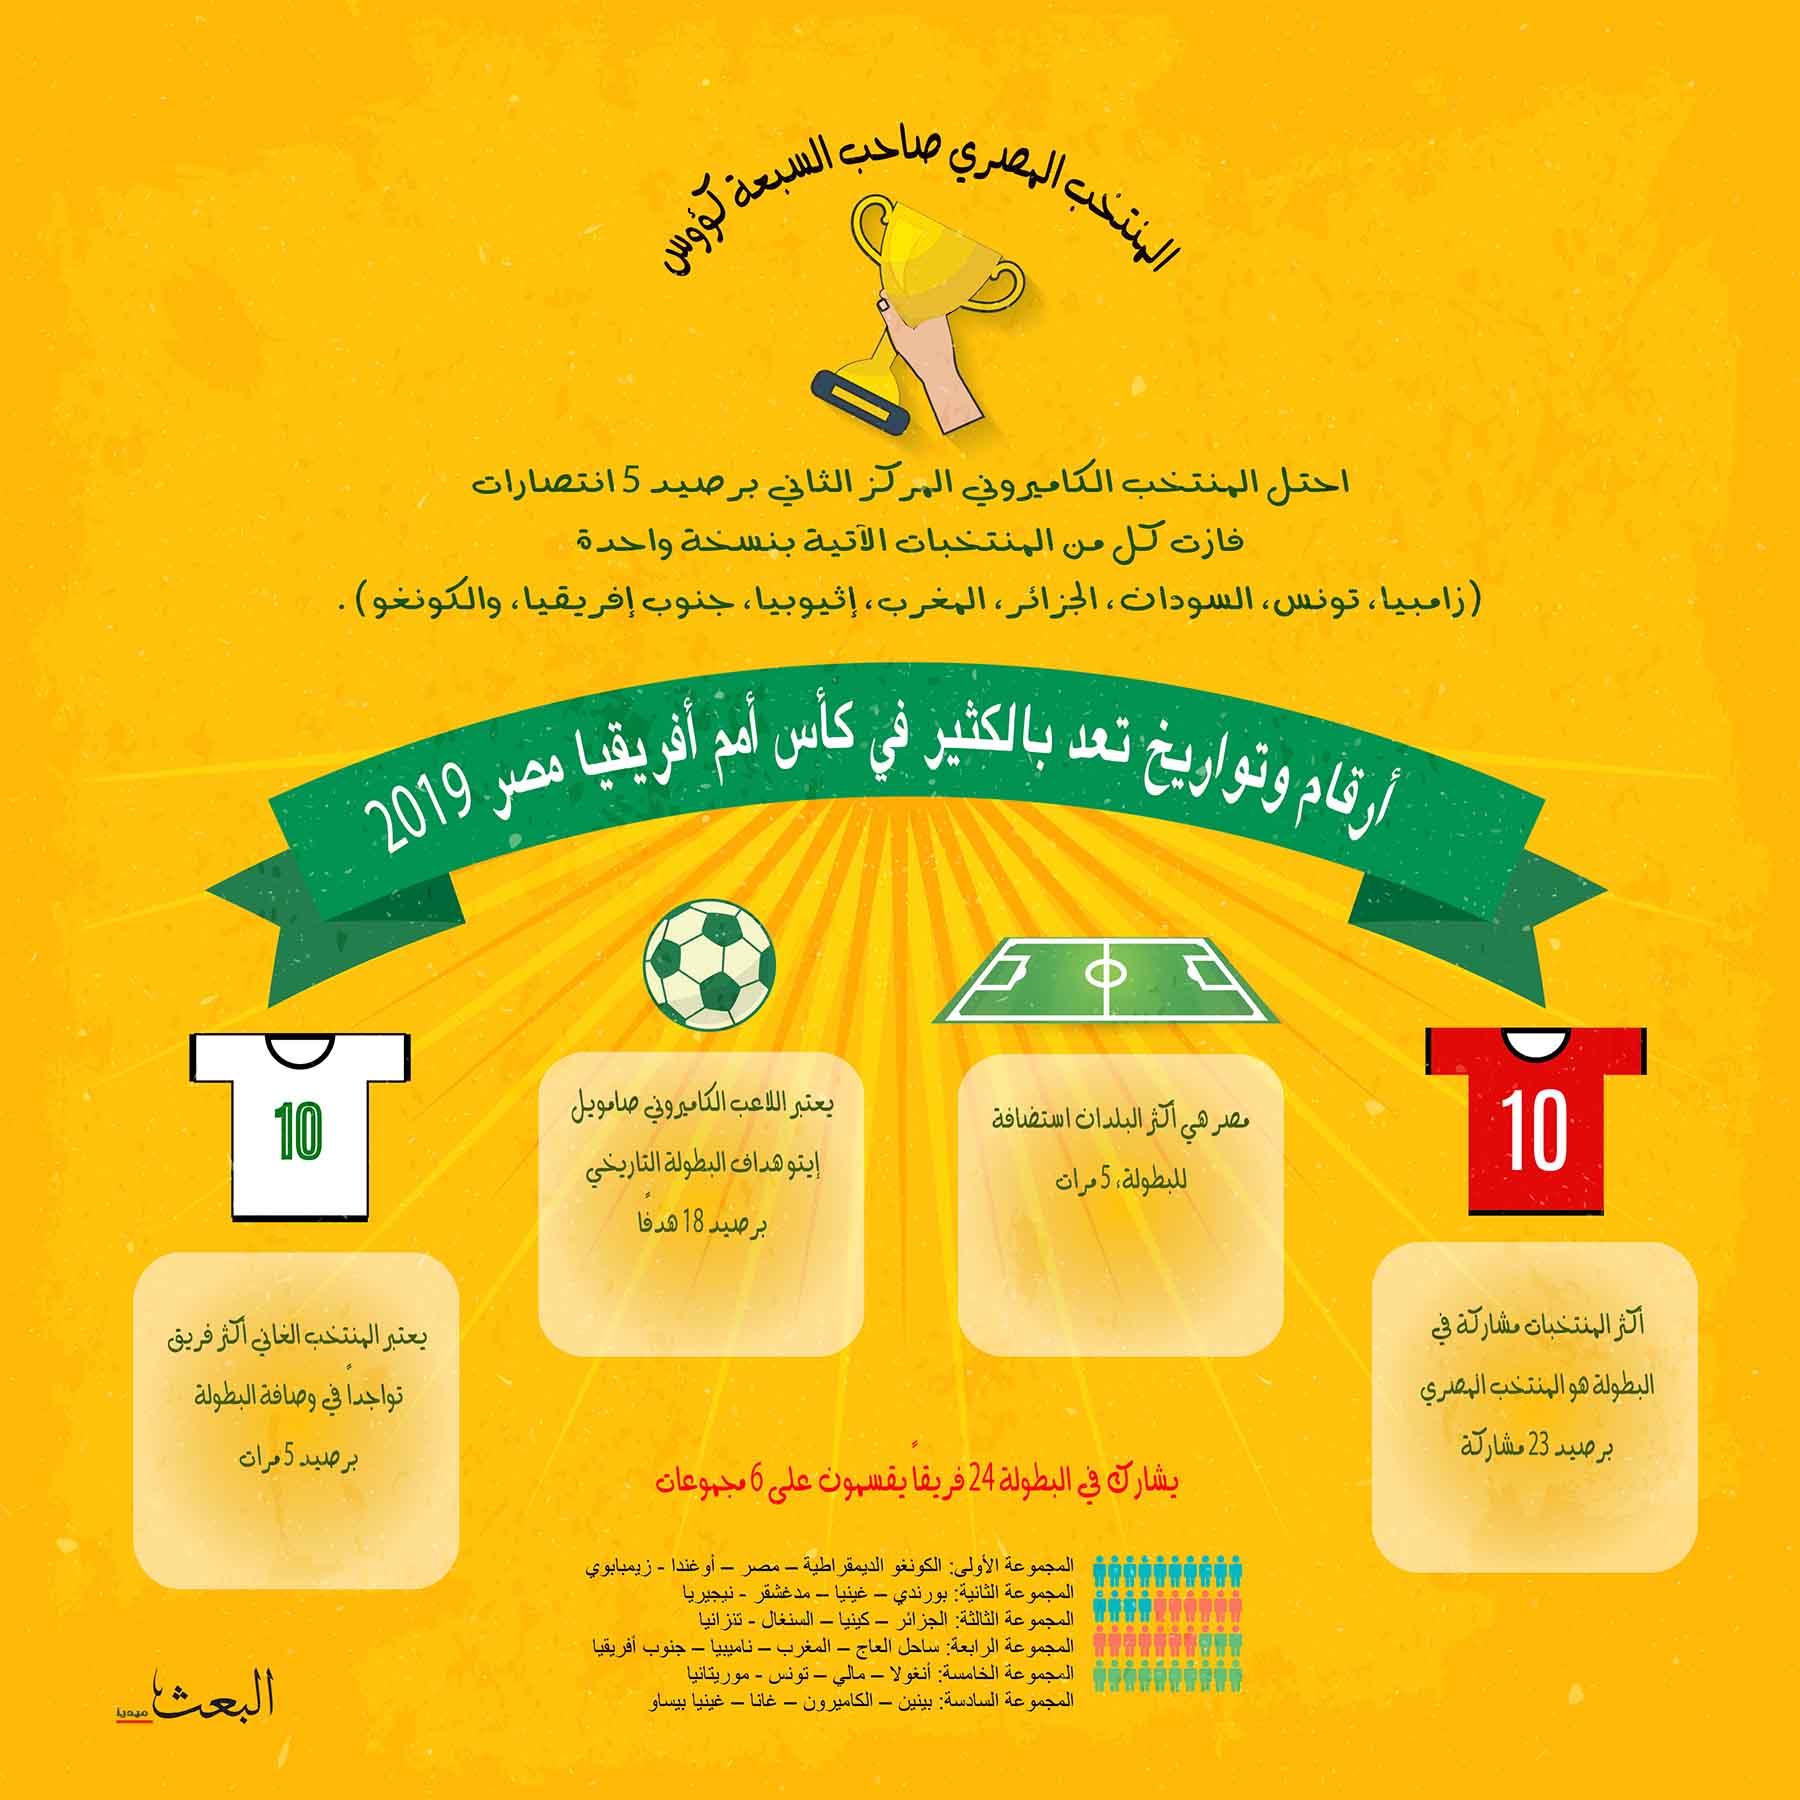 أرقام وتواريخ تعد بالكثير في كأس أمم أفريقيا مصر 2019